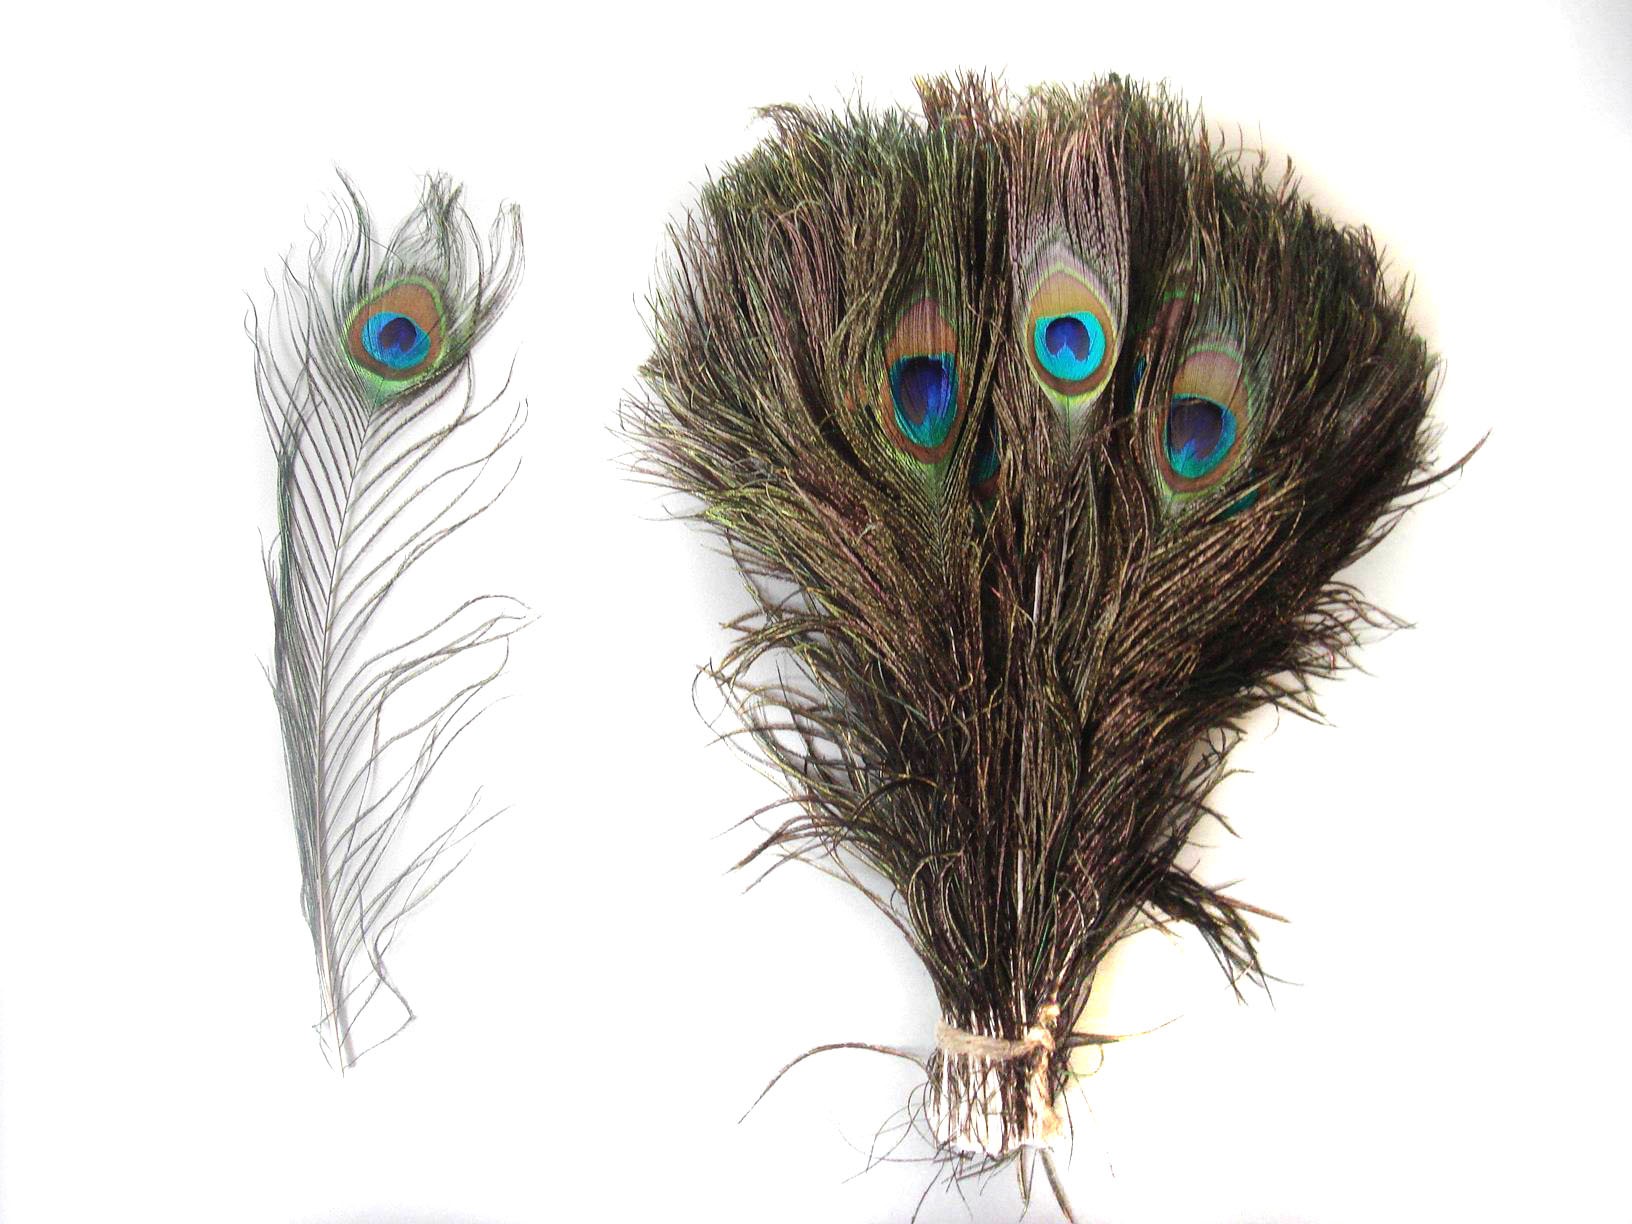 50 Peacock Feathers 10-12inch - Peacock Feathers - Feathers & Boas